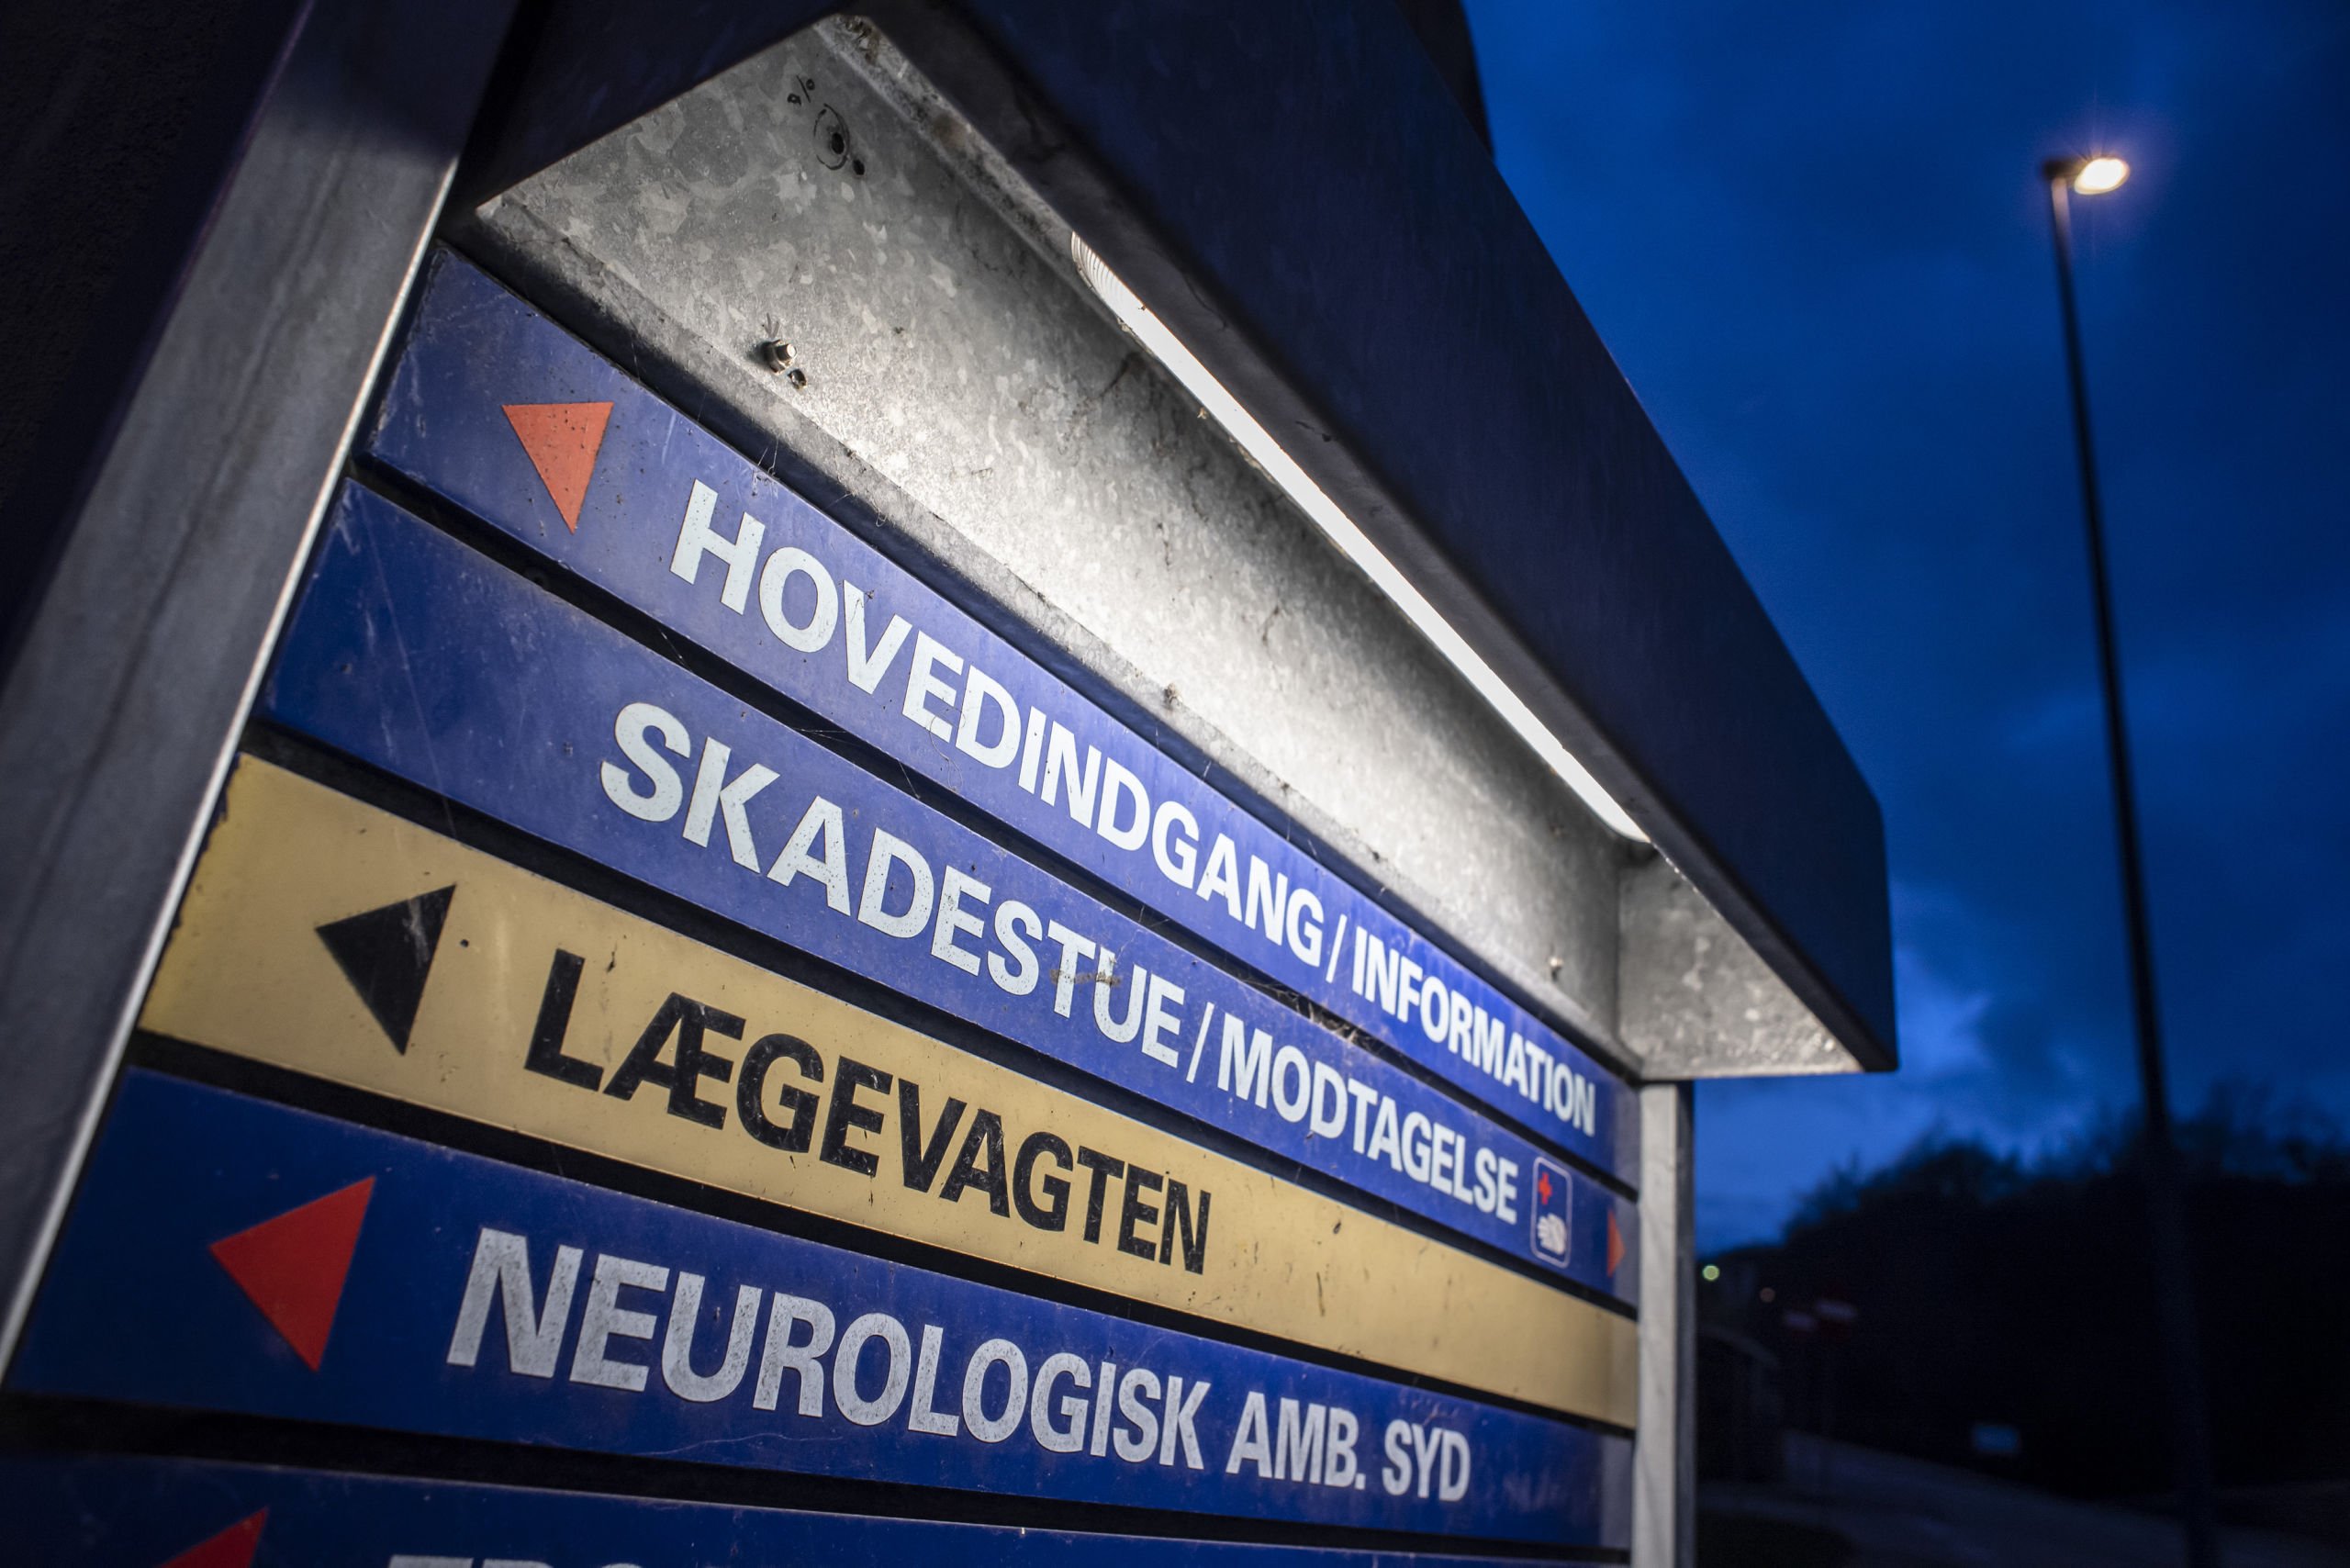 Familie afvist af lægevagt: I Nordjylland må børneorm kravle videre hen over weekenden